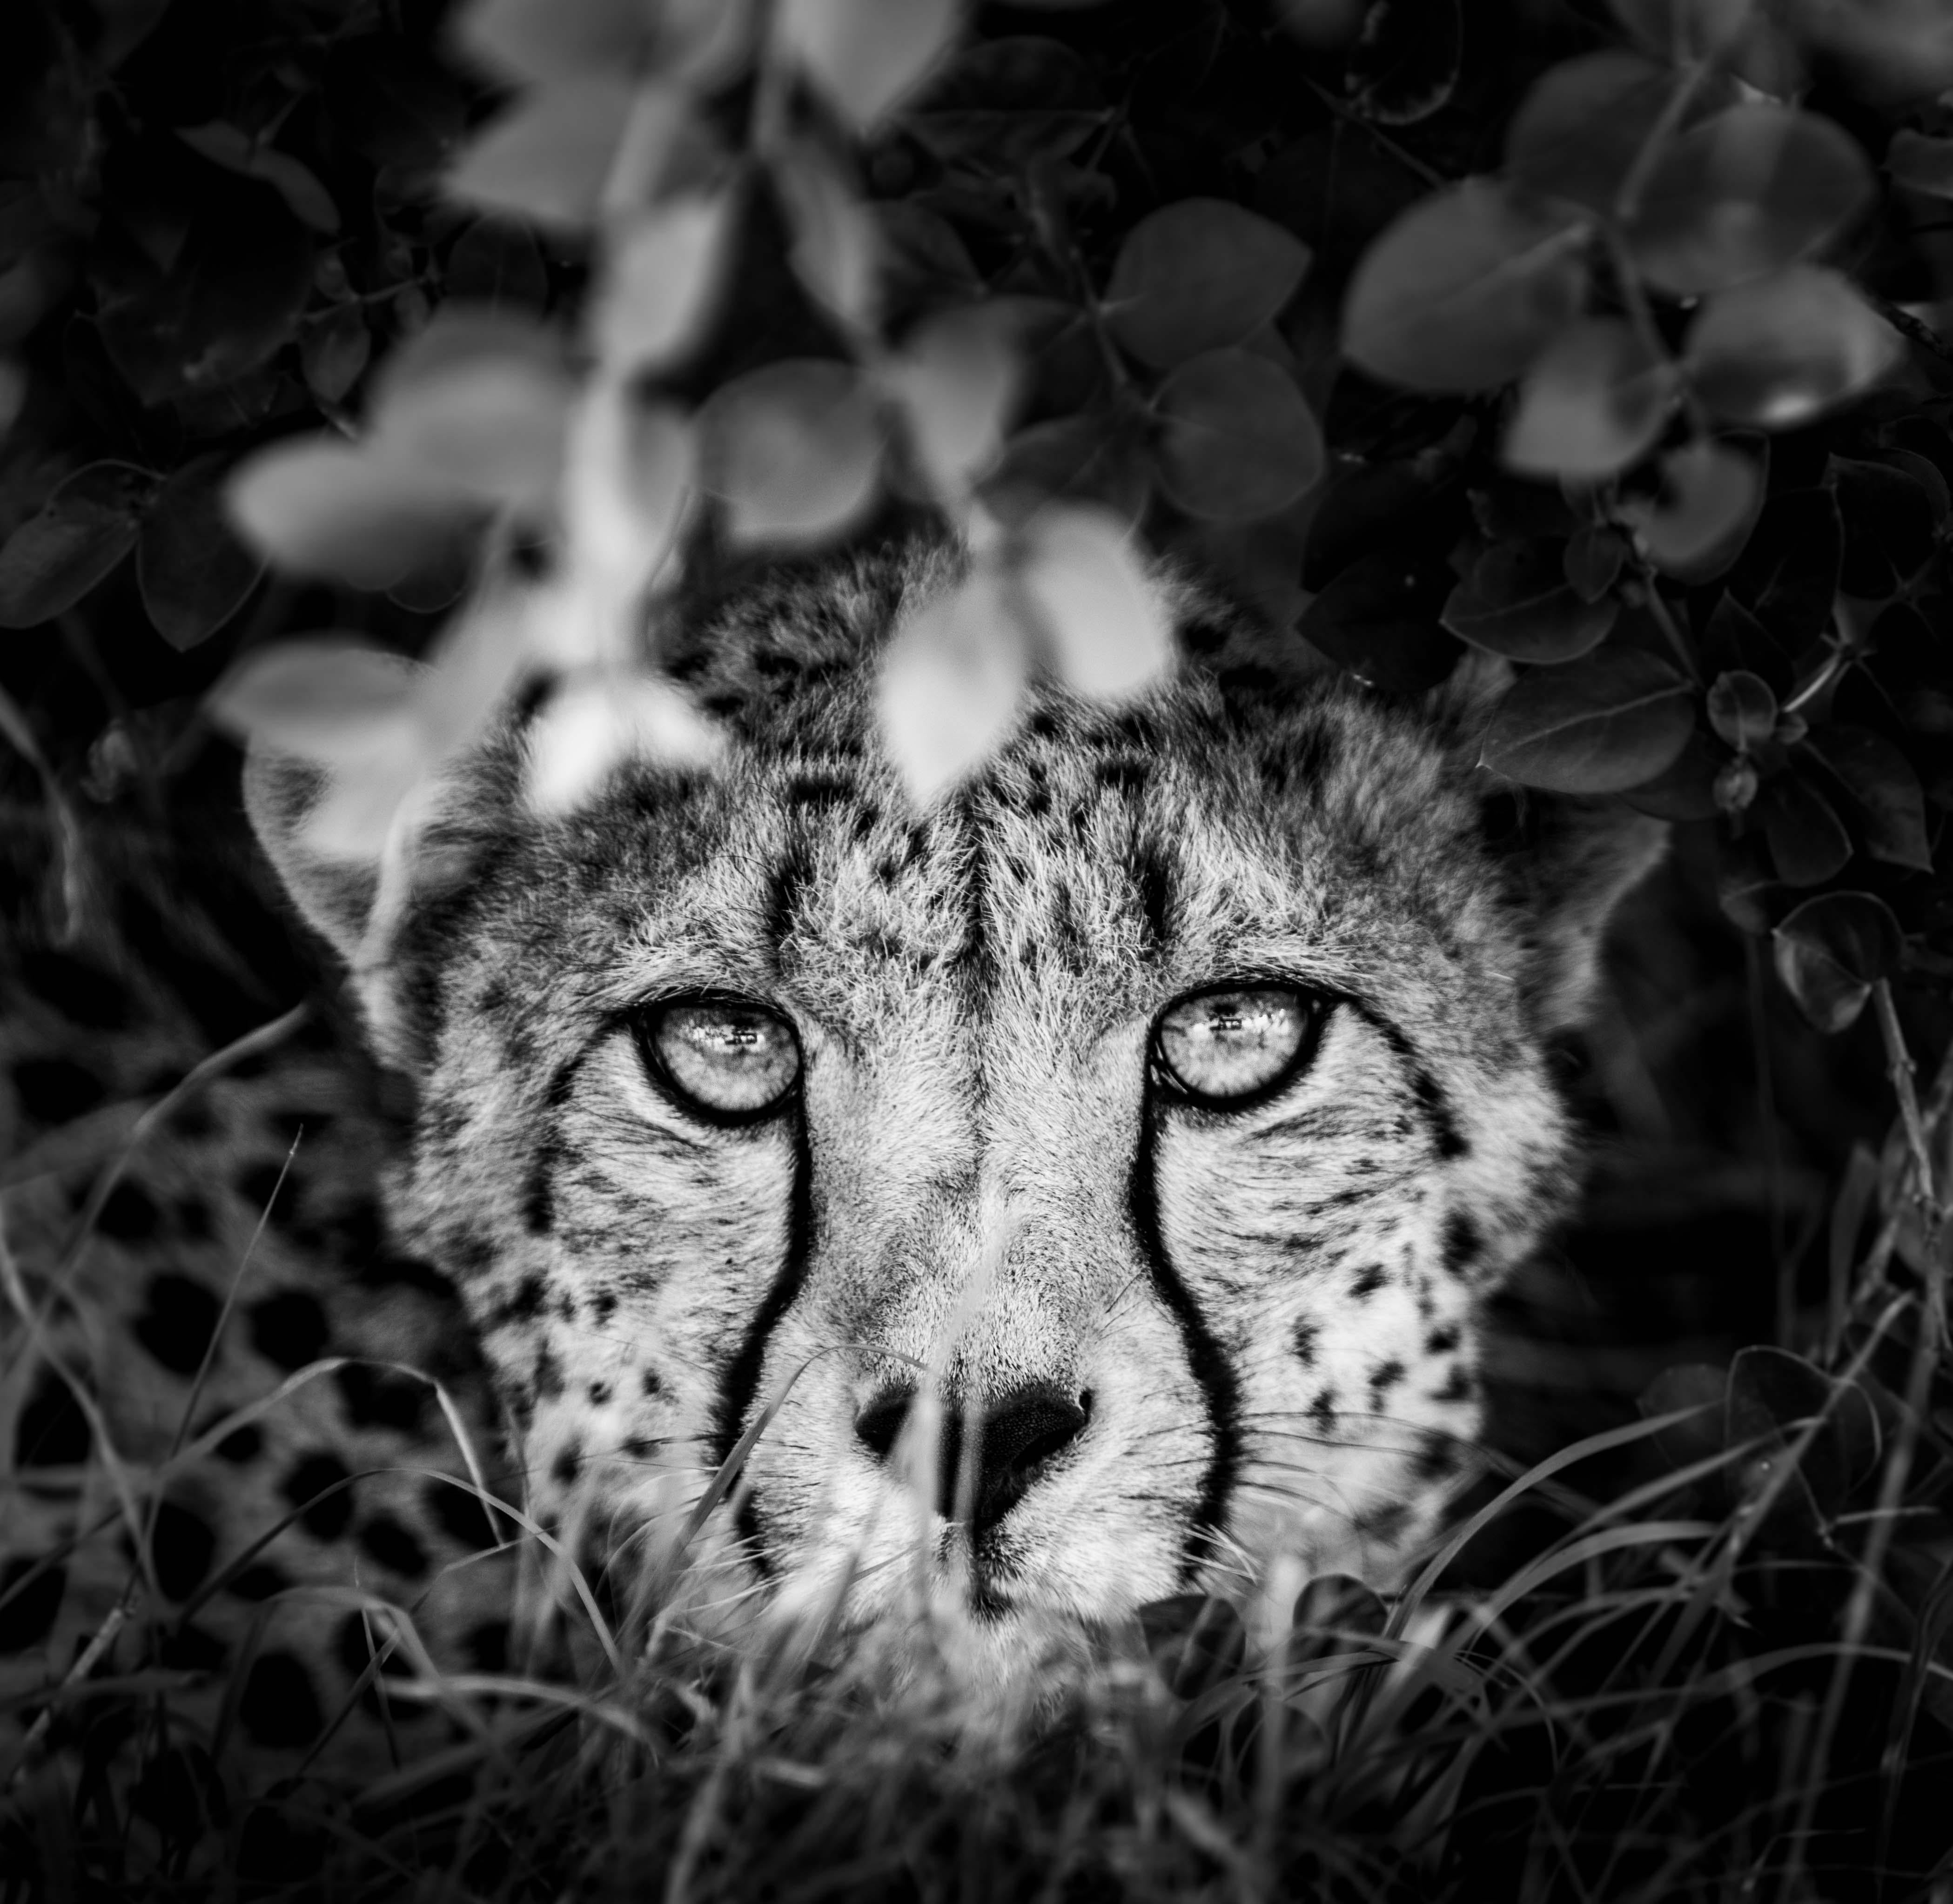 James Lewin - The Cheetah and I, Borana, Kenya, photographie 2020, imprimée d'après